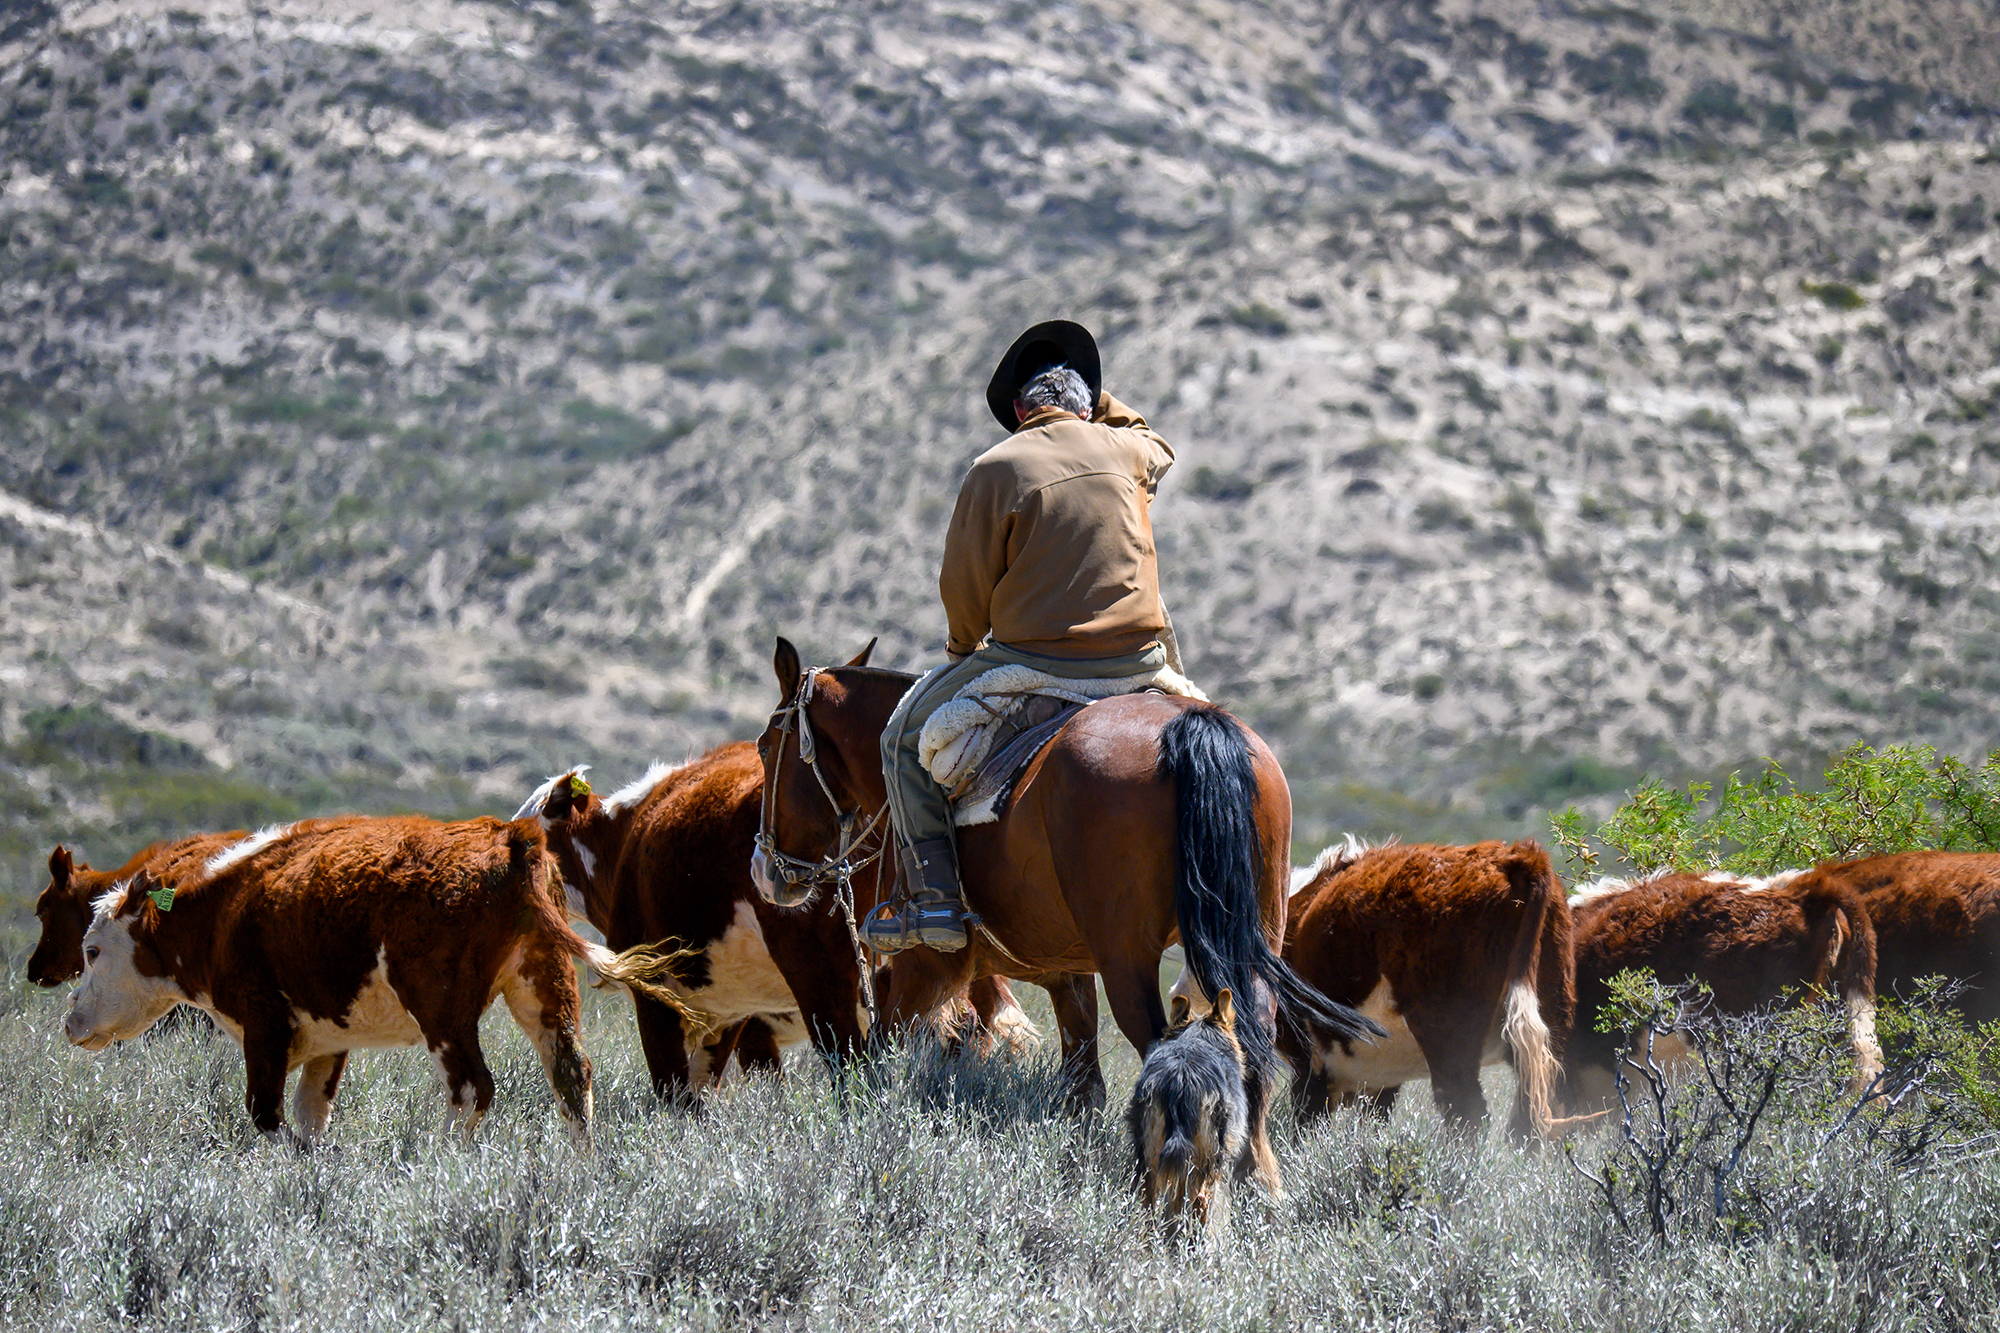 Argentine Gaucho herding cattle in the Argentine Pampas fields